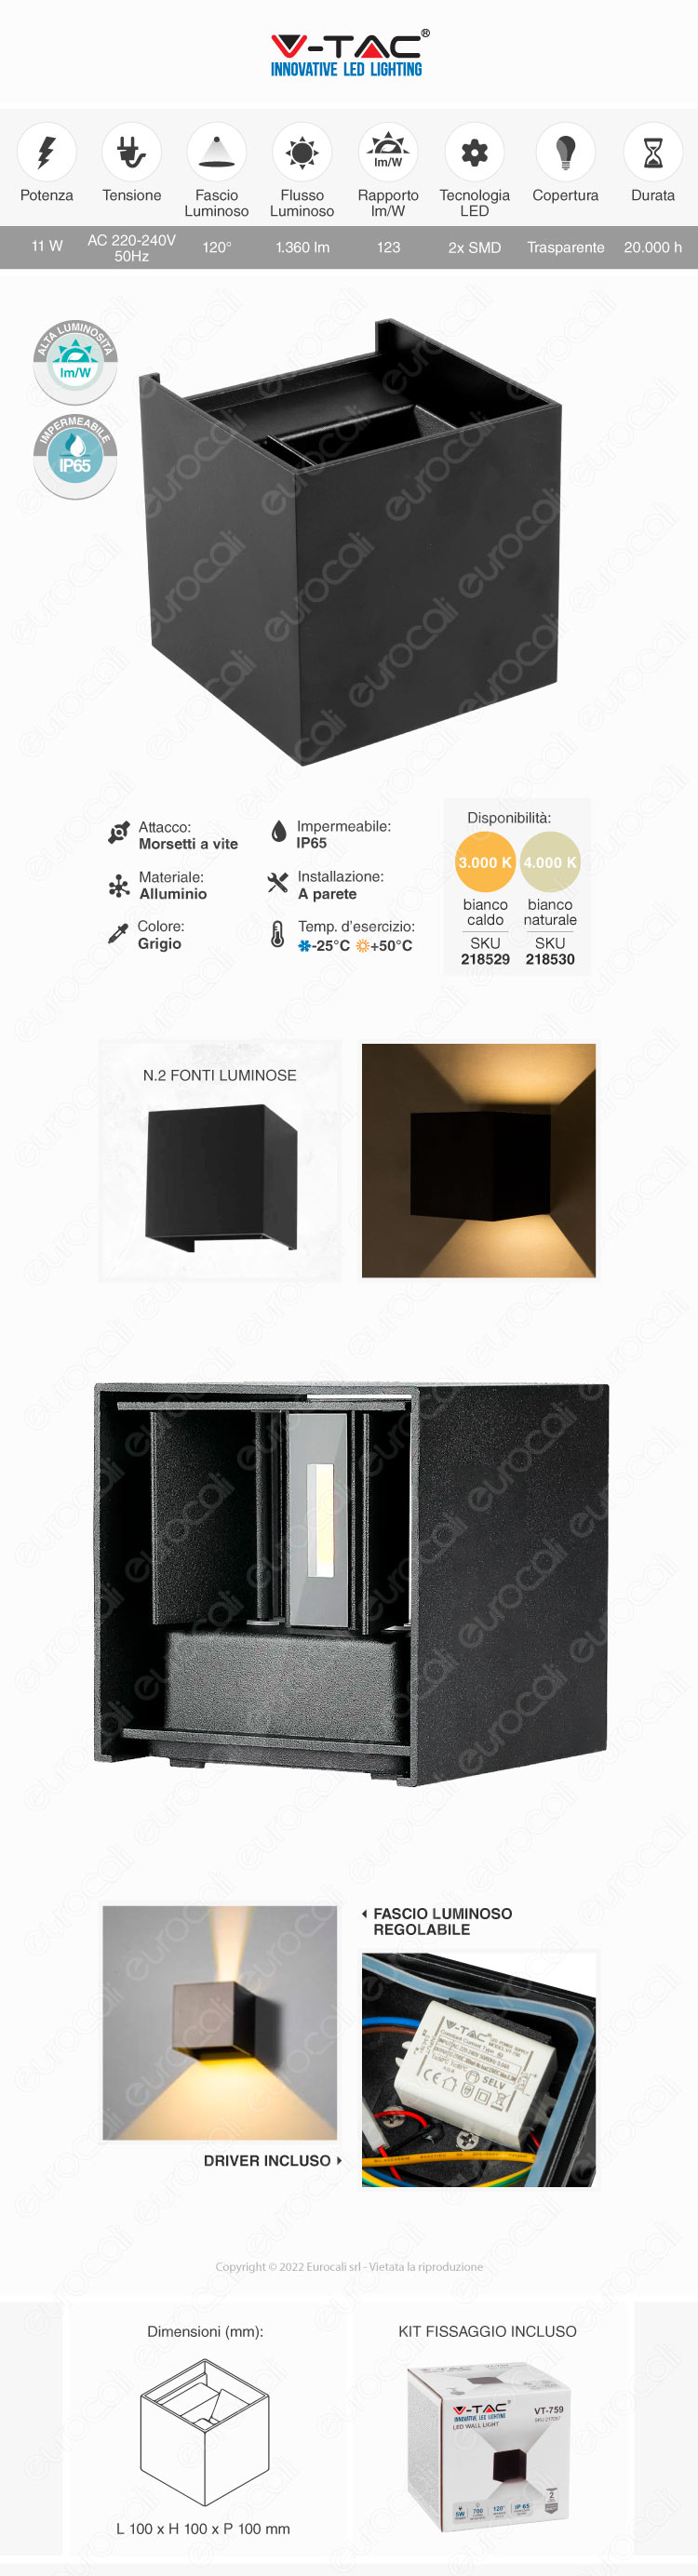 v-tac vt-759-12 applique led 11w wall light cob ip65 black